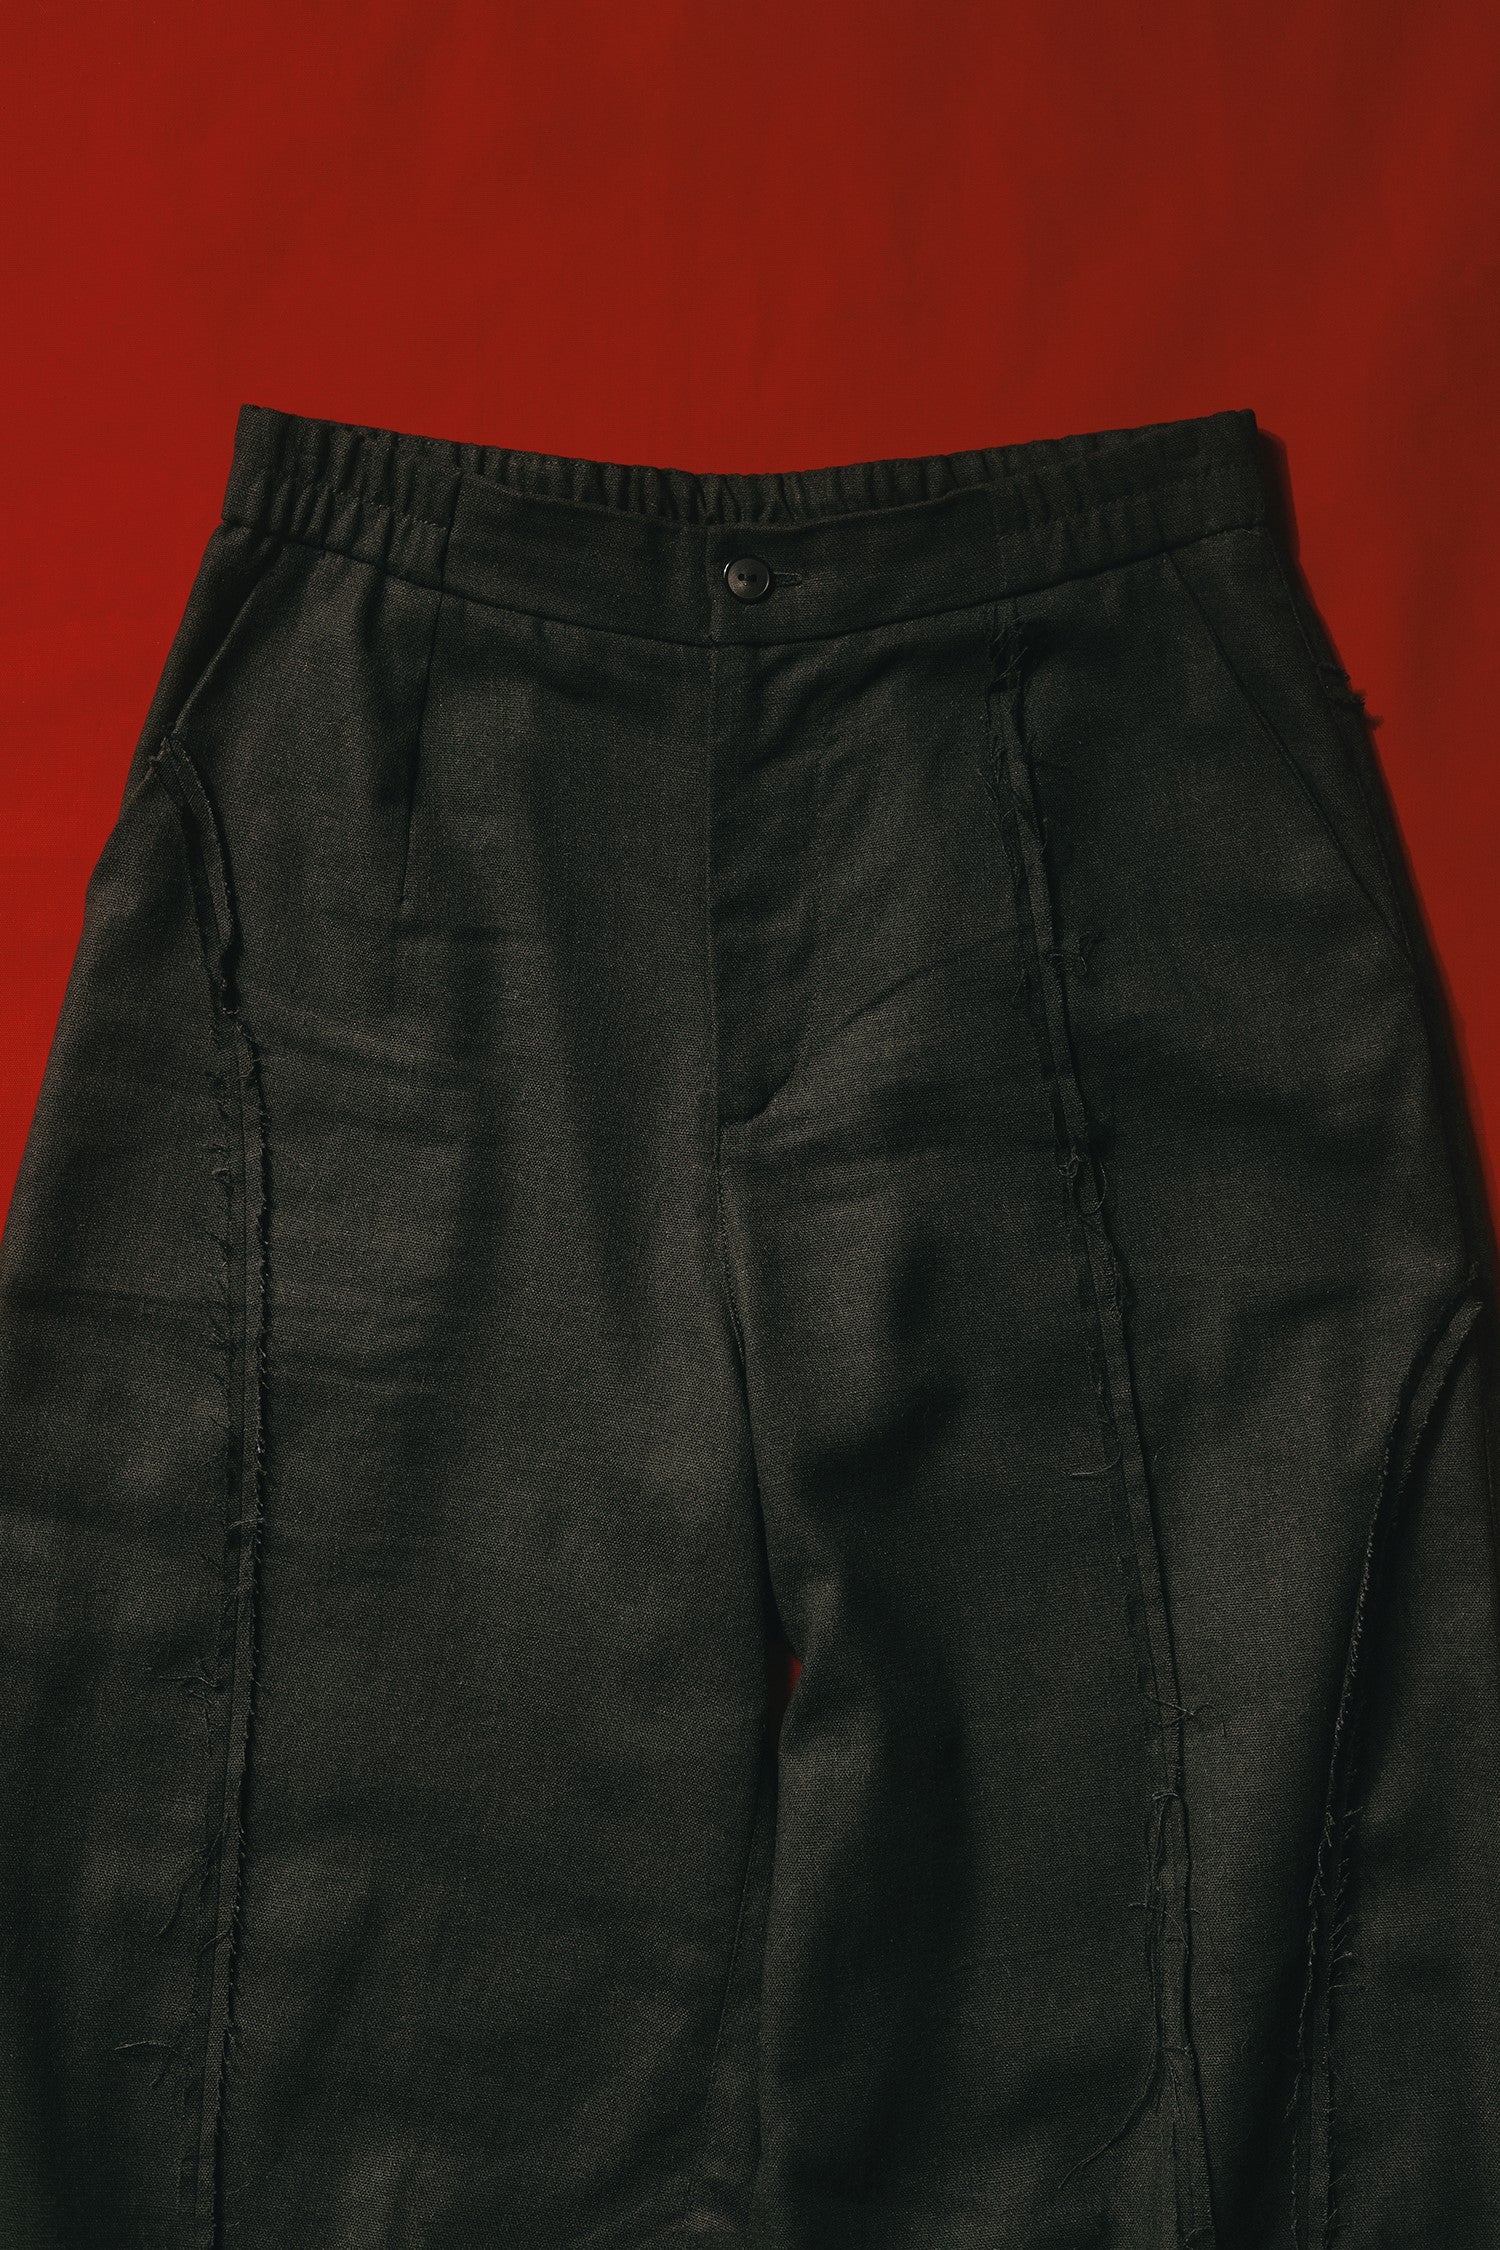 Brutal - Column Pants (Black)